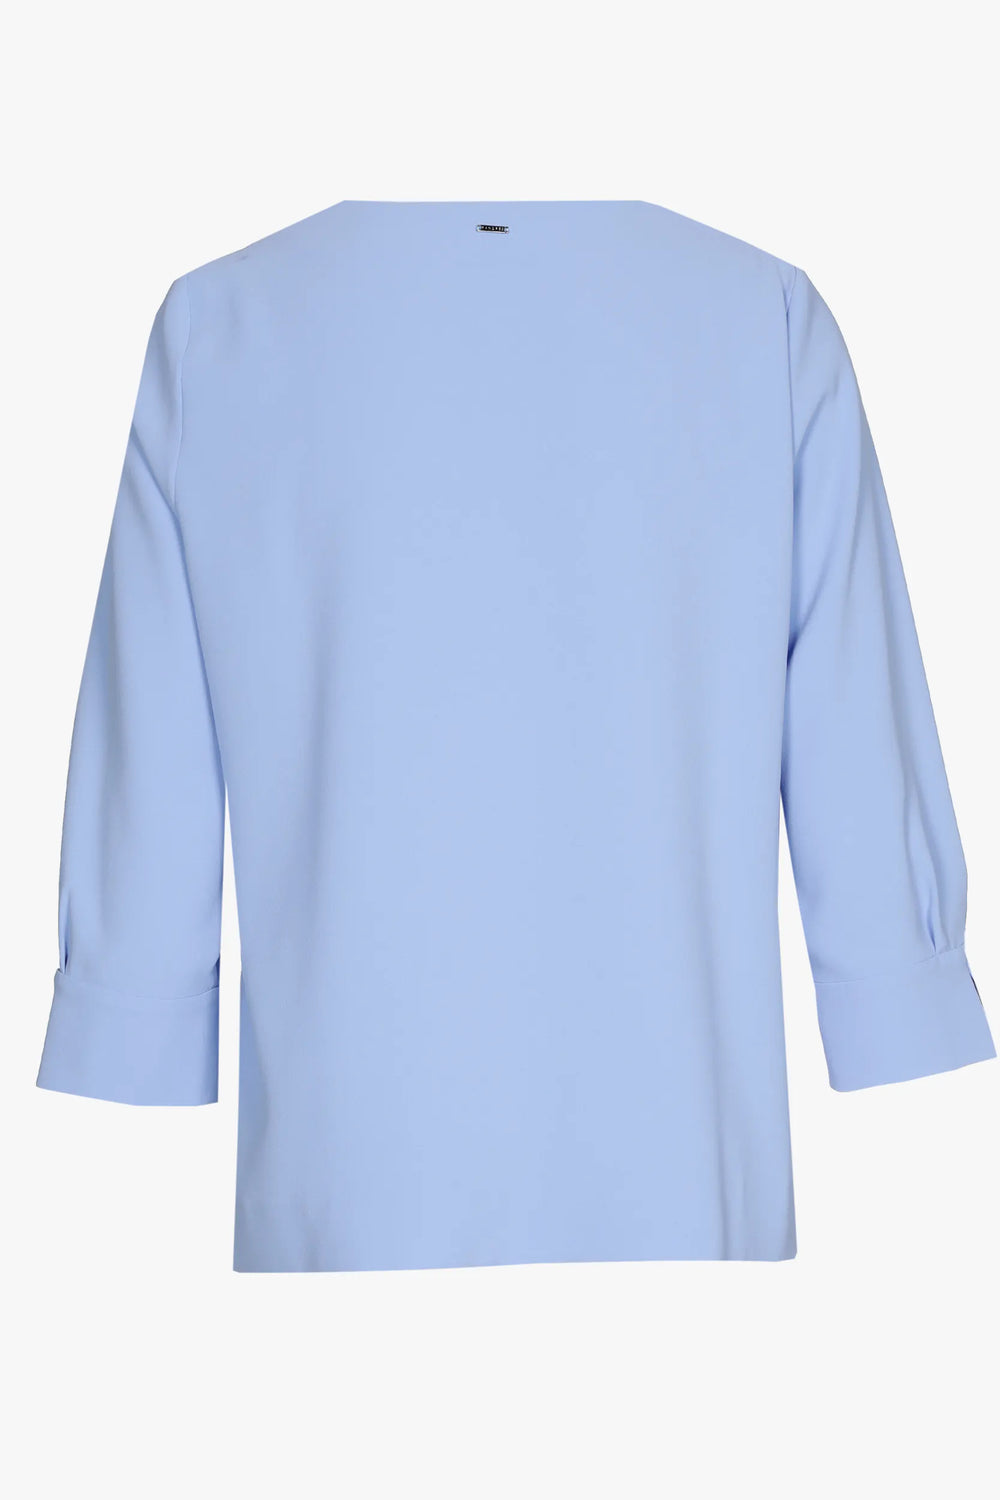 melkblauwe blouse van crêpe-xandres-